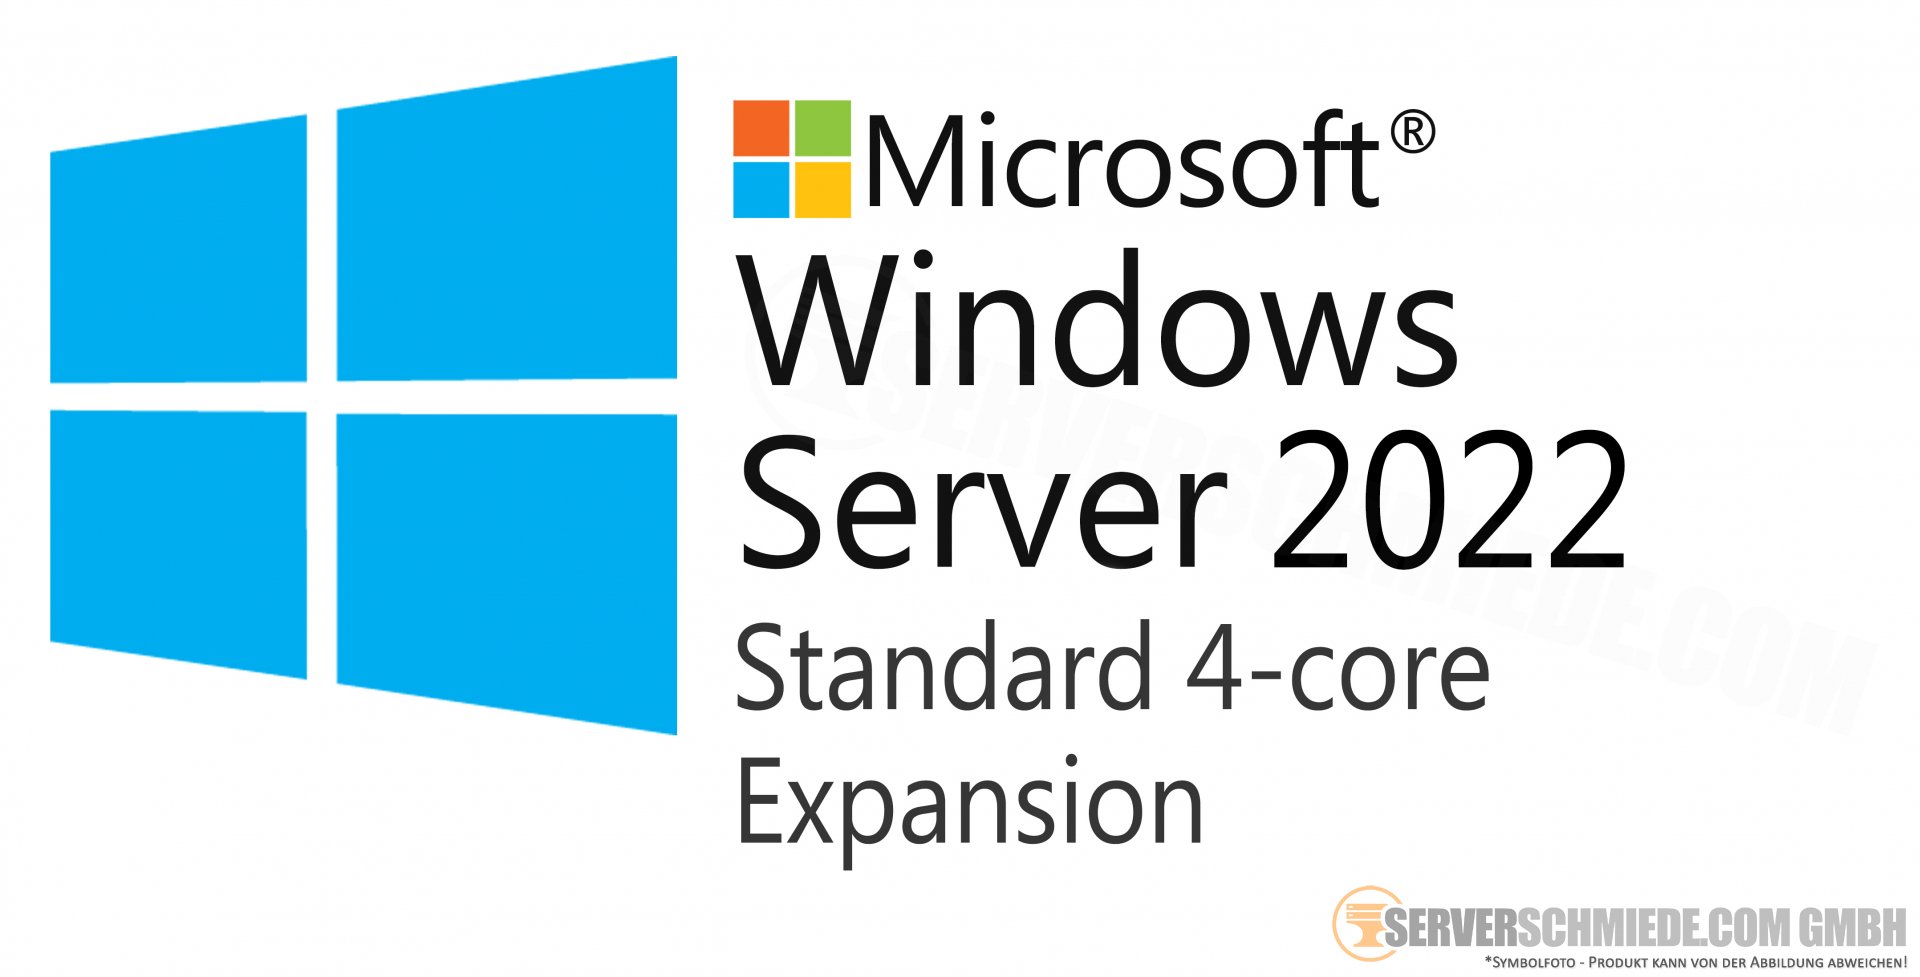 Microsoft Windows Server 2022 Standard 4 Core Expansion Erweiterung Kommerziell Nutzbare 8688